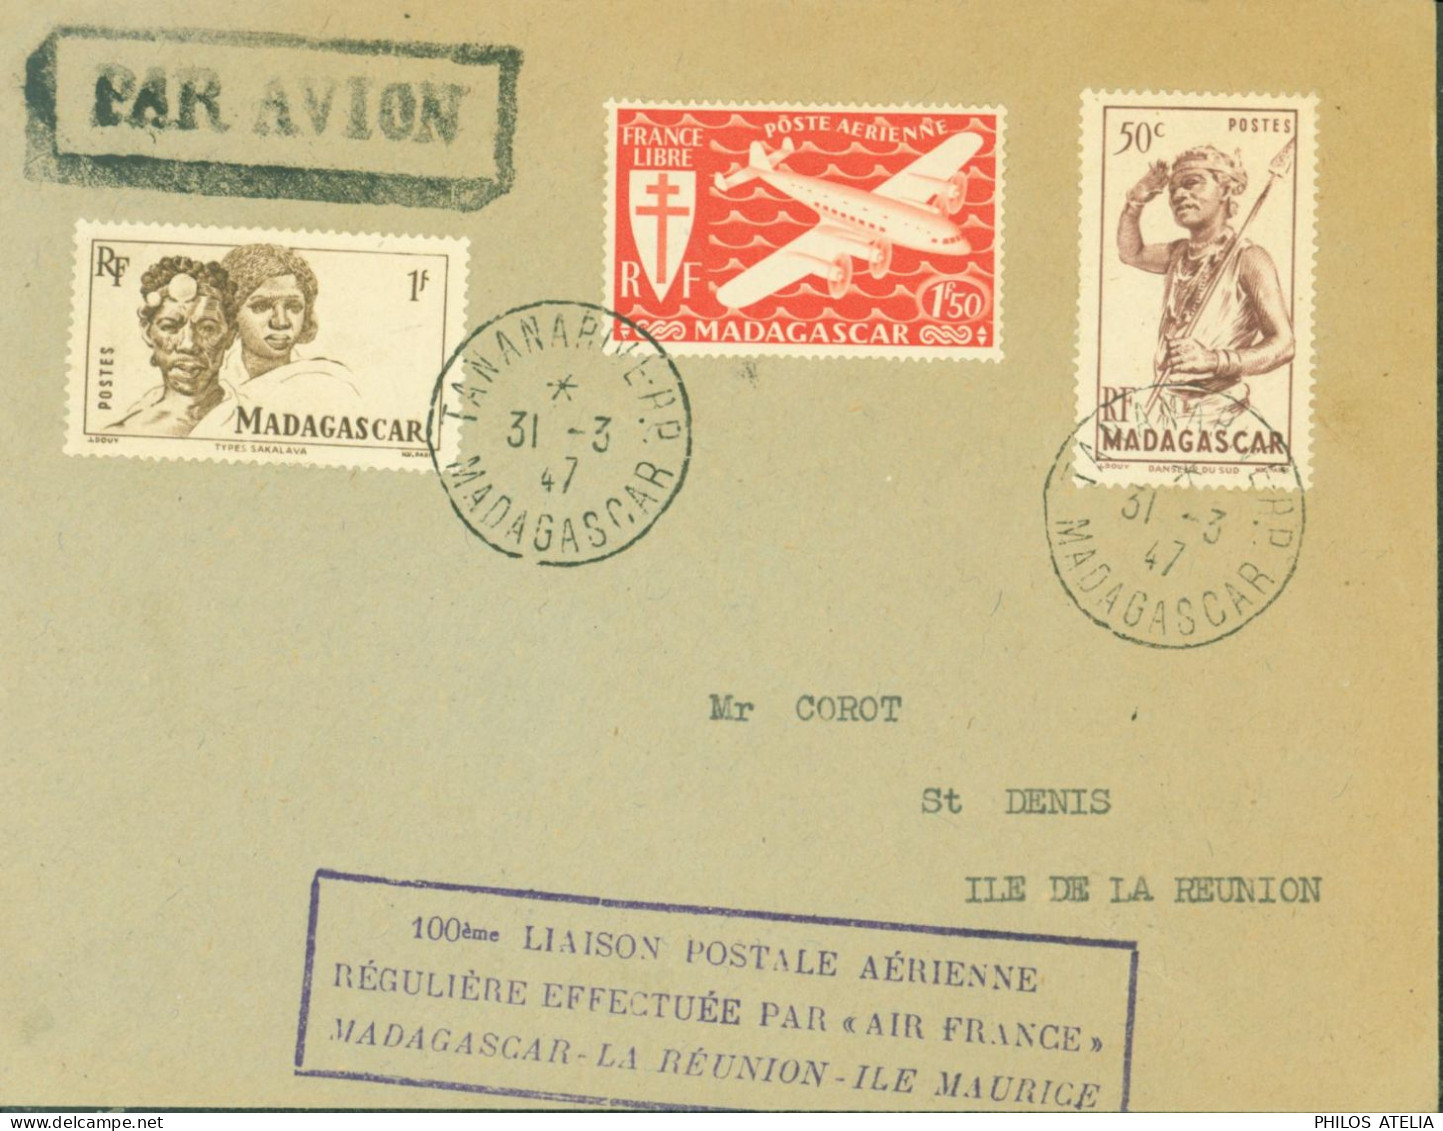 100 Liaison Postale Aérienne Régulière Effectuée Par Air France Madagascar La Réunion Ile Maurice CAD Tananarive 31 3 47 - Aéreo